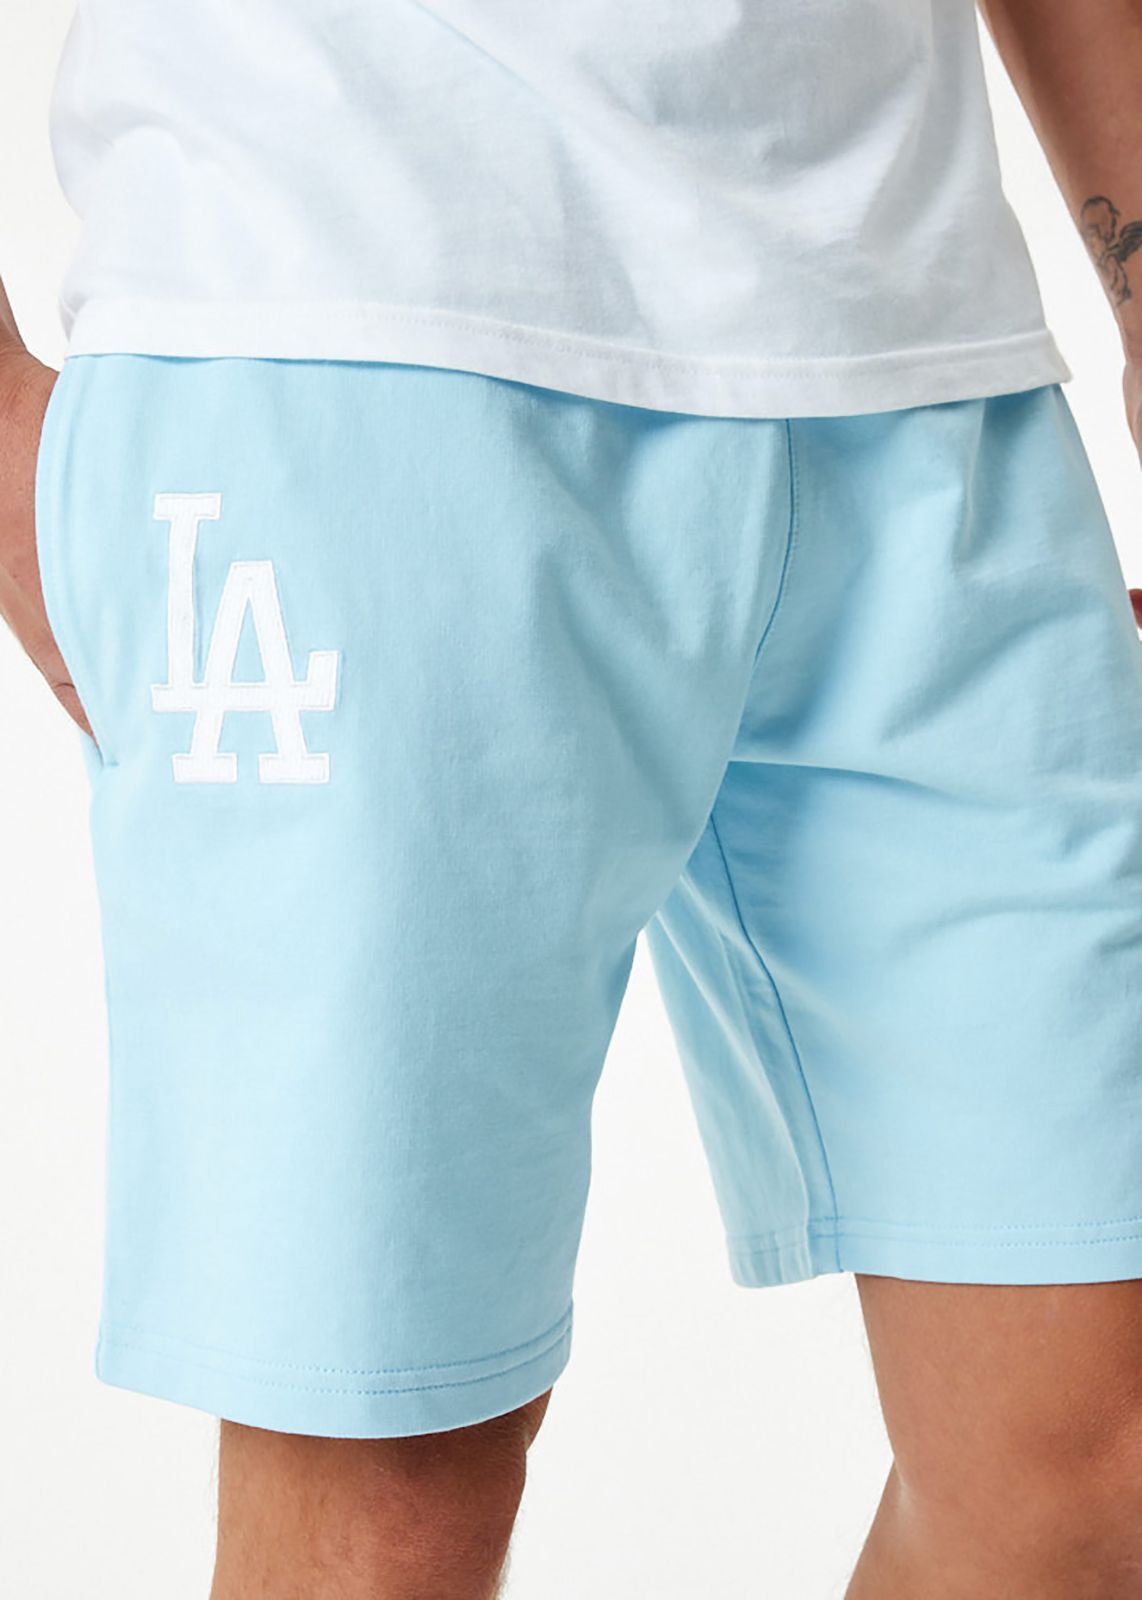  מכנסי טרנינג לוגו LA Dodgers של NEW ERA